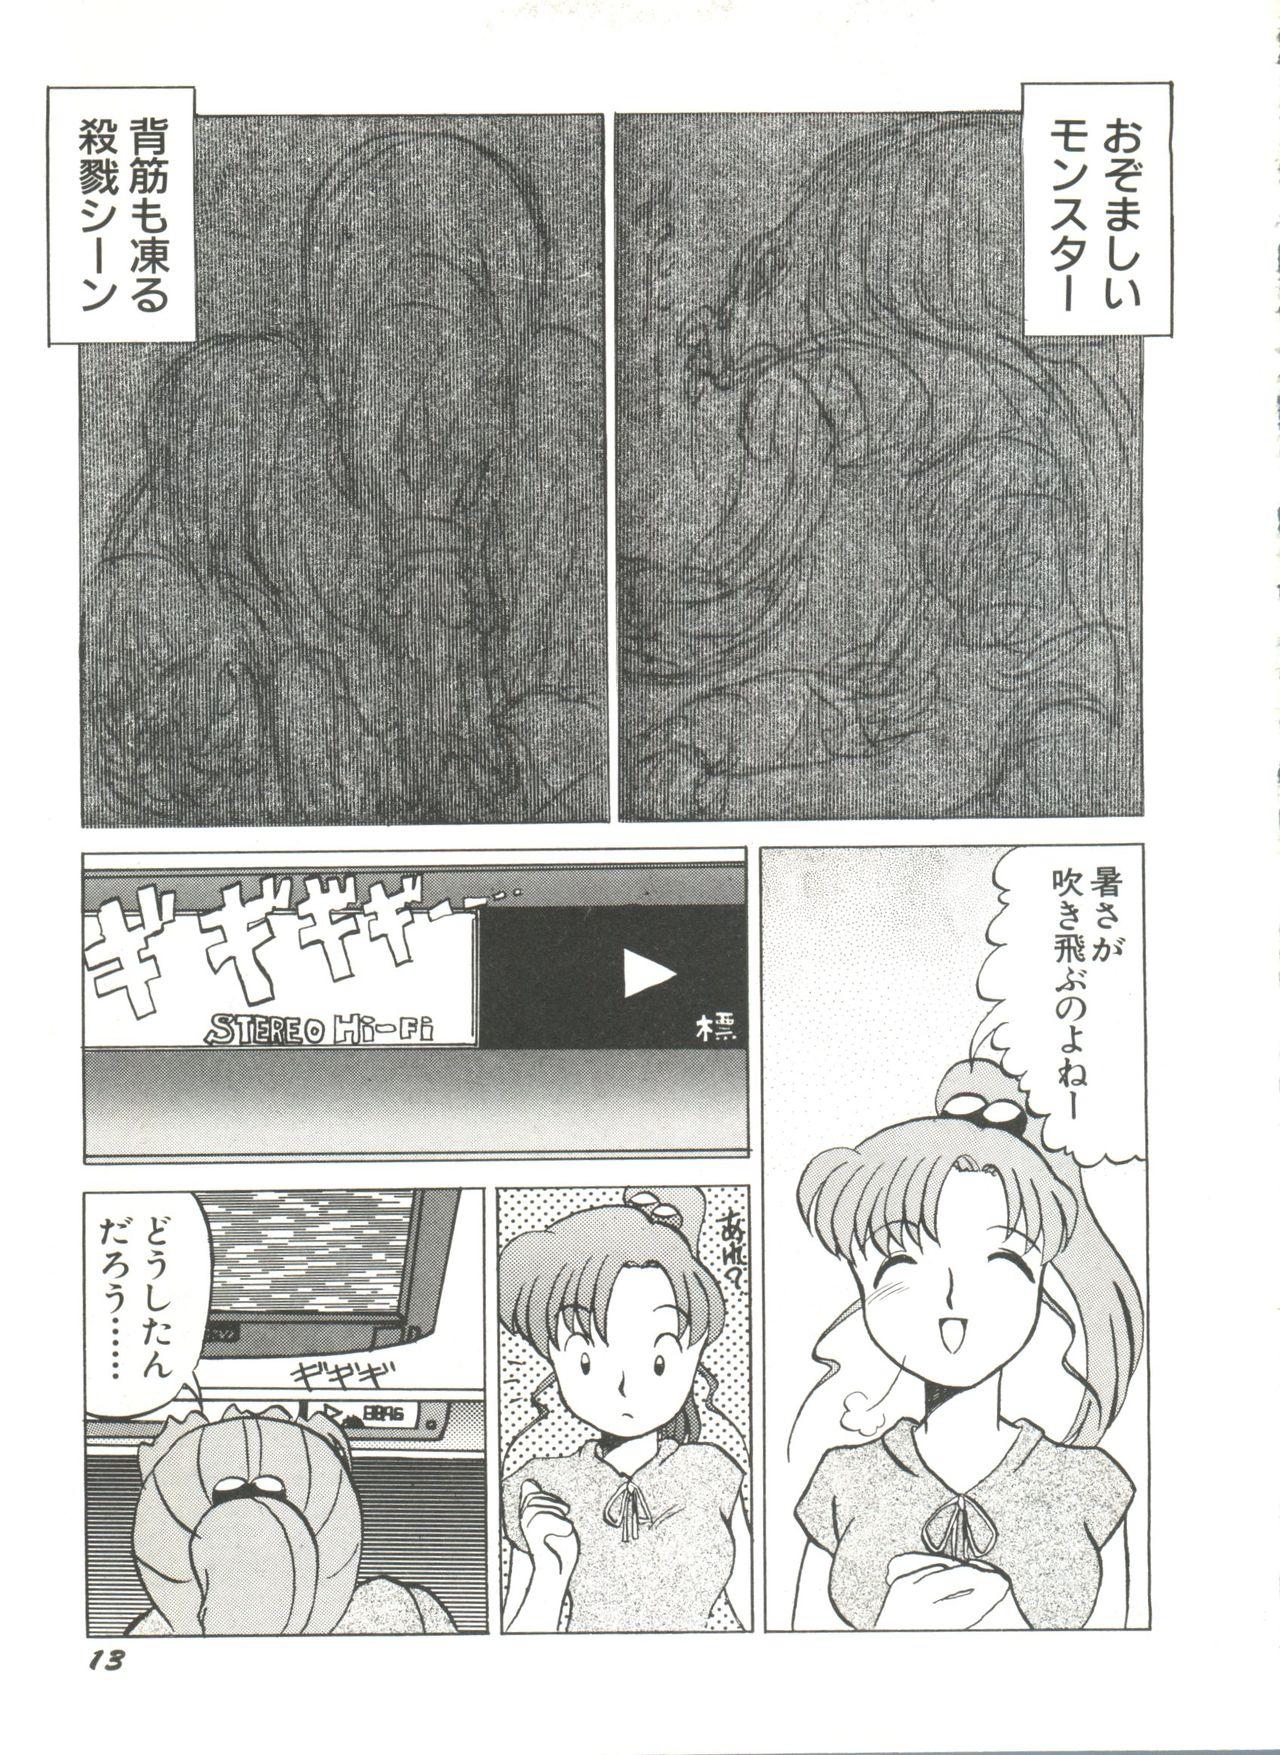 Bishoujo Doujinshi Anthology 8 - Moon Paradise 5 Tsuki no Rakuen 17